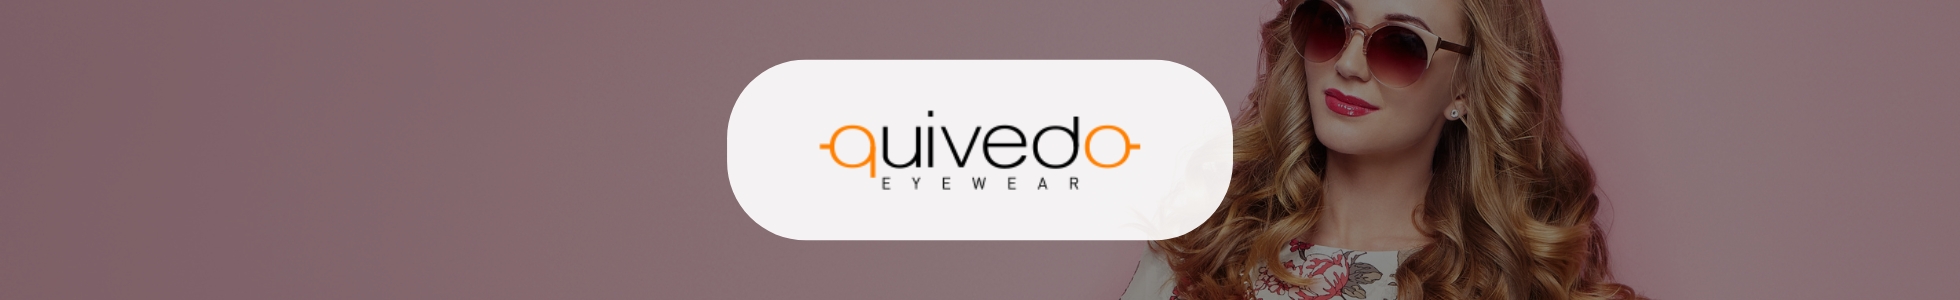 Quivedo.com - Shop online Occhiali da sole